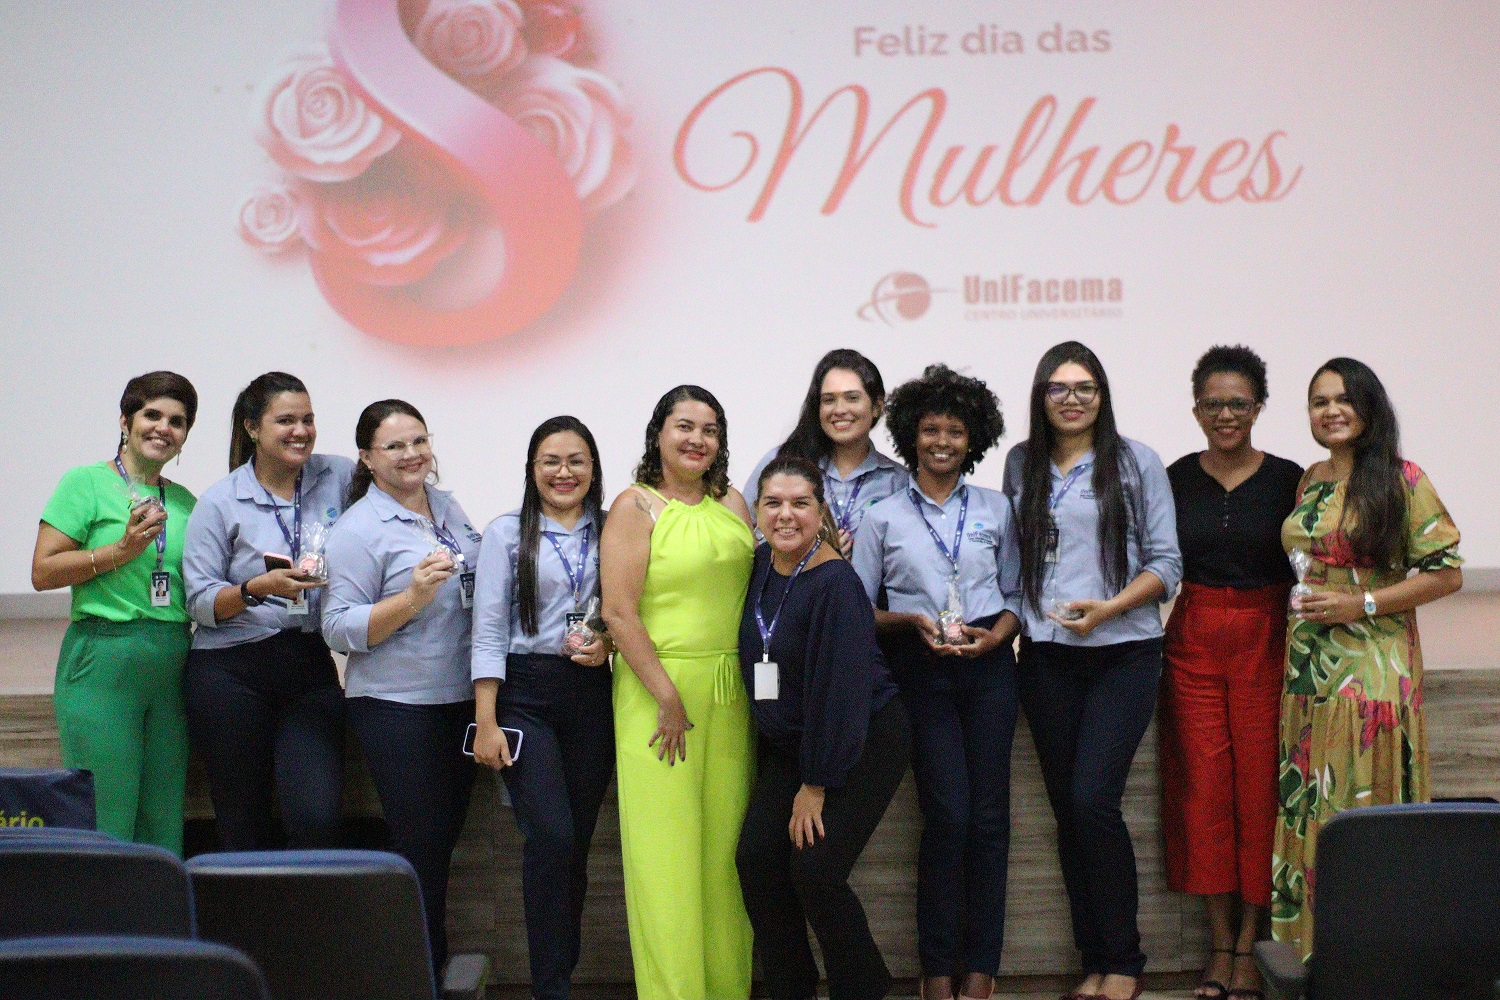 UniFacema promove semana com ações em homenagem às mulheres